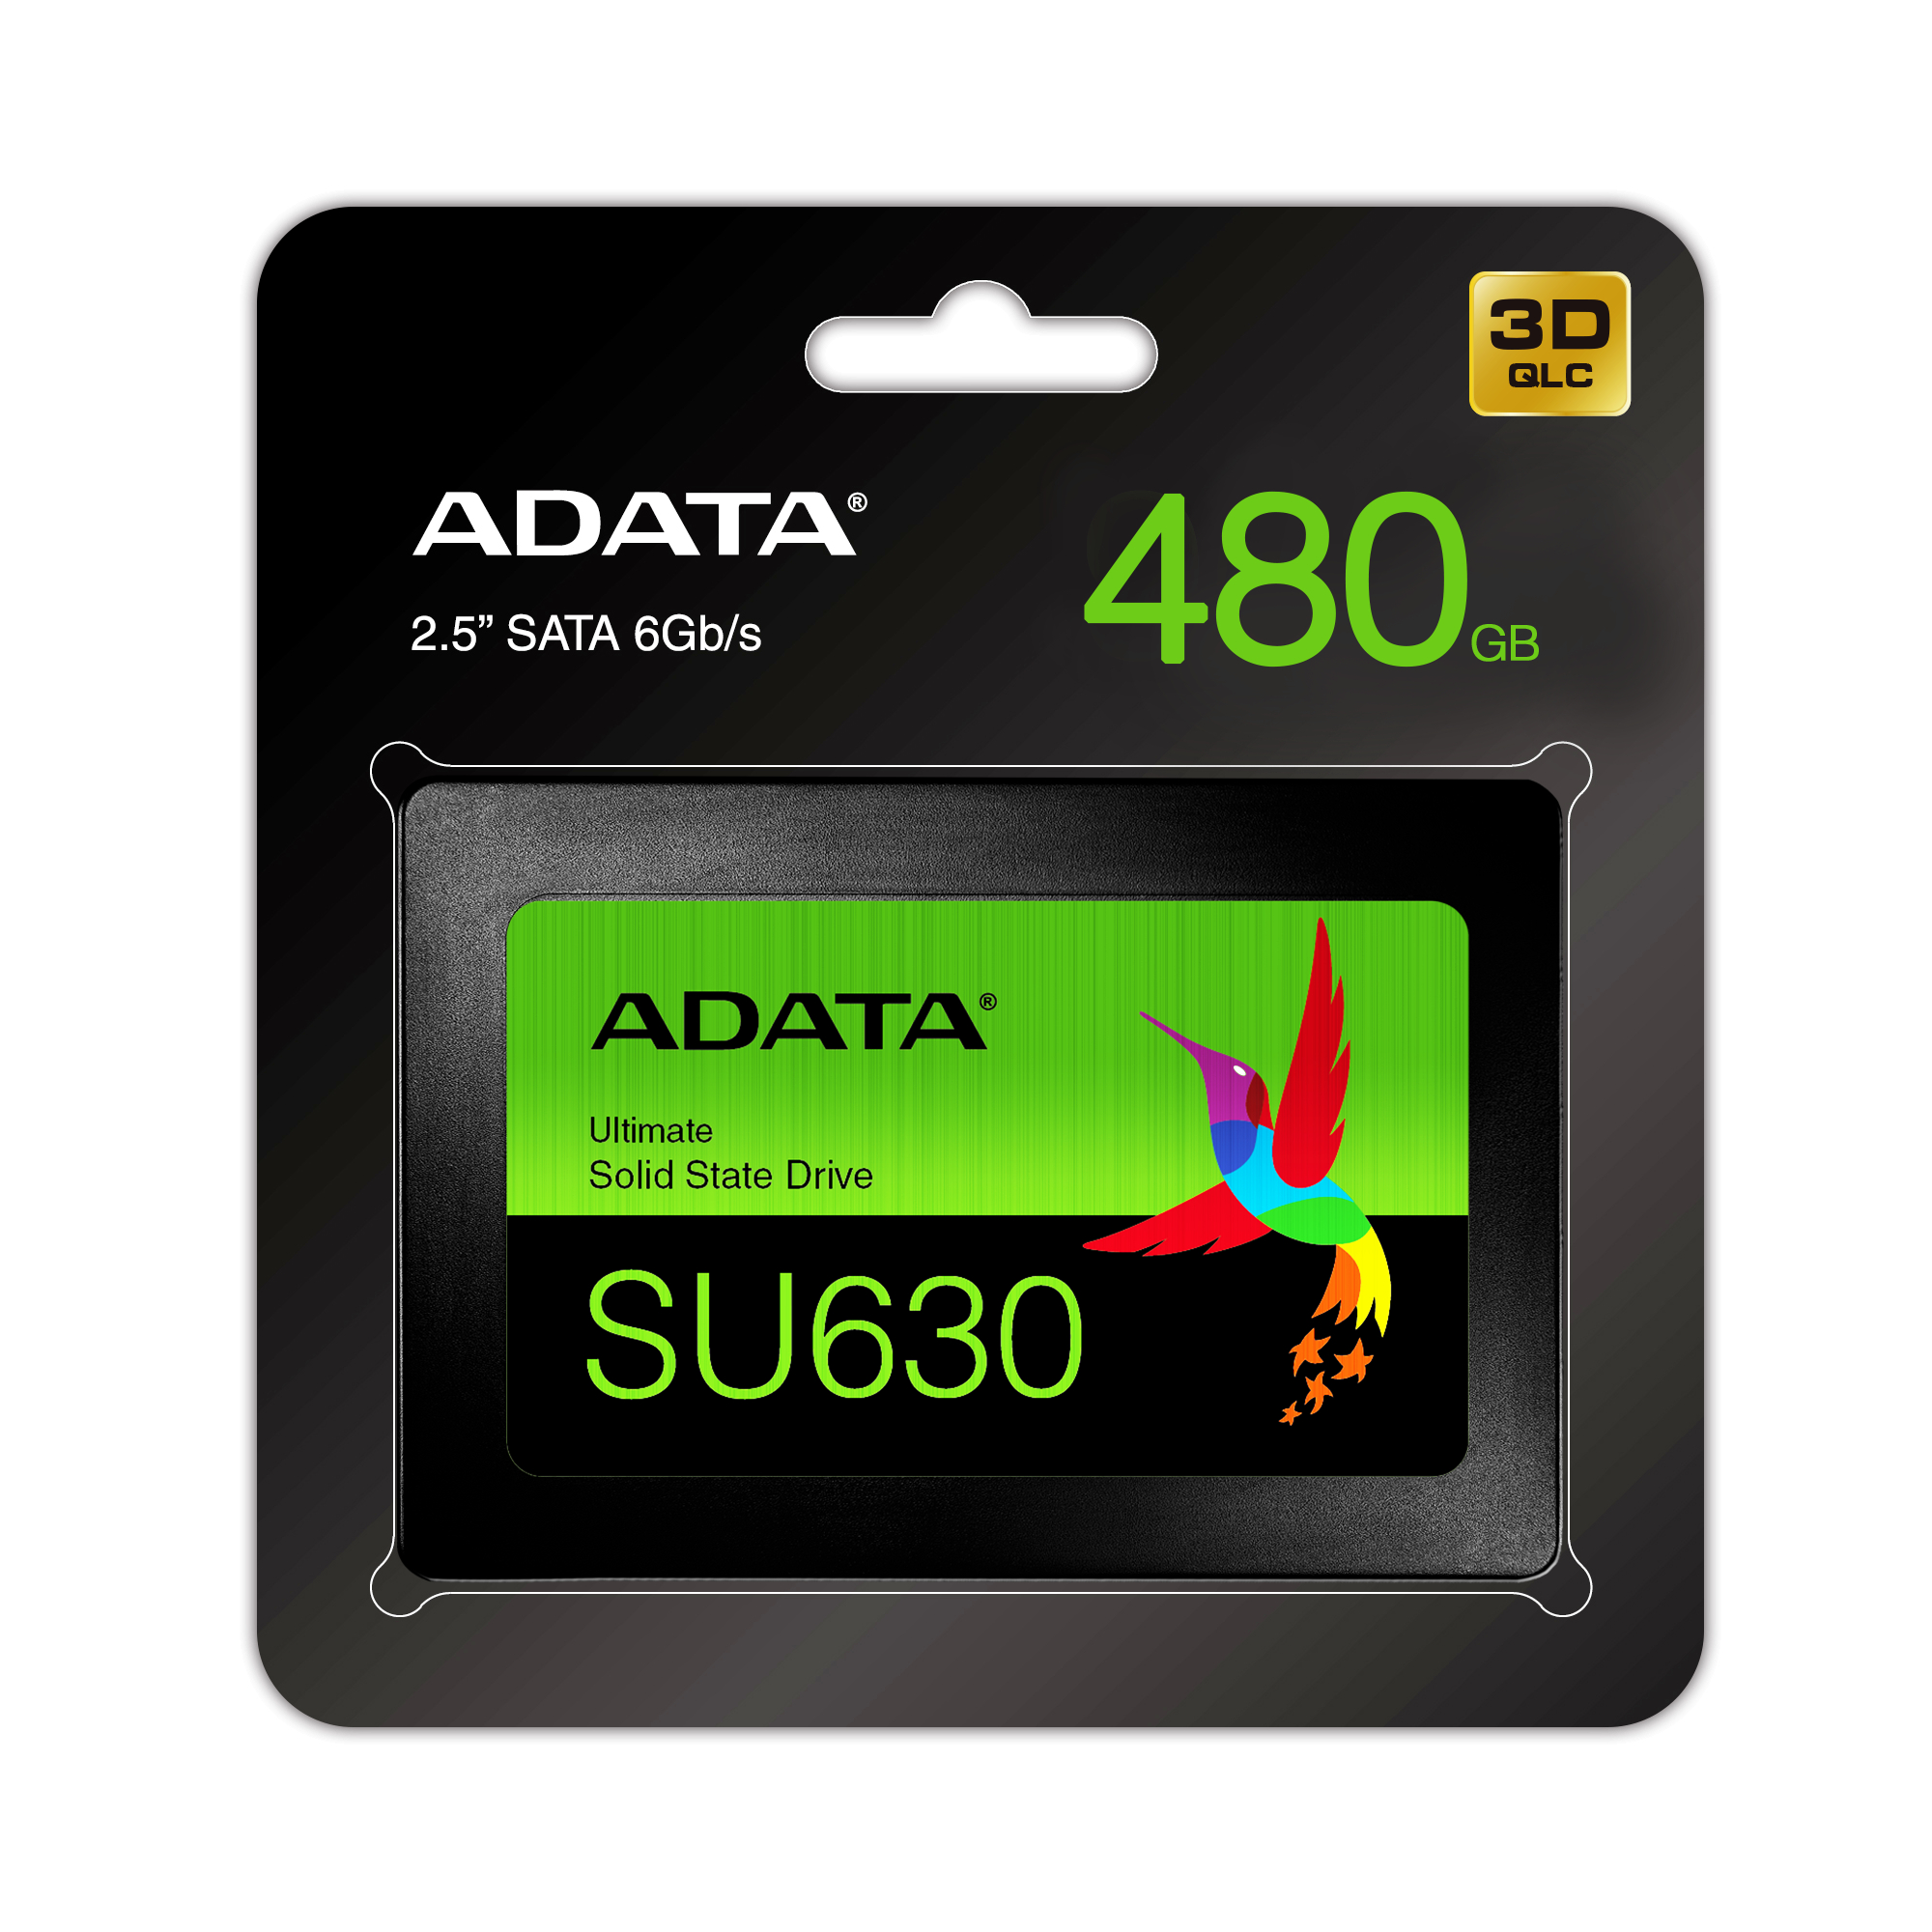 ADATA Unidad de Estado Sólido SSD SU630 480GB 3D NAND , SATA III,QLC,2.5